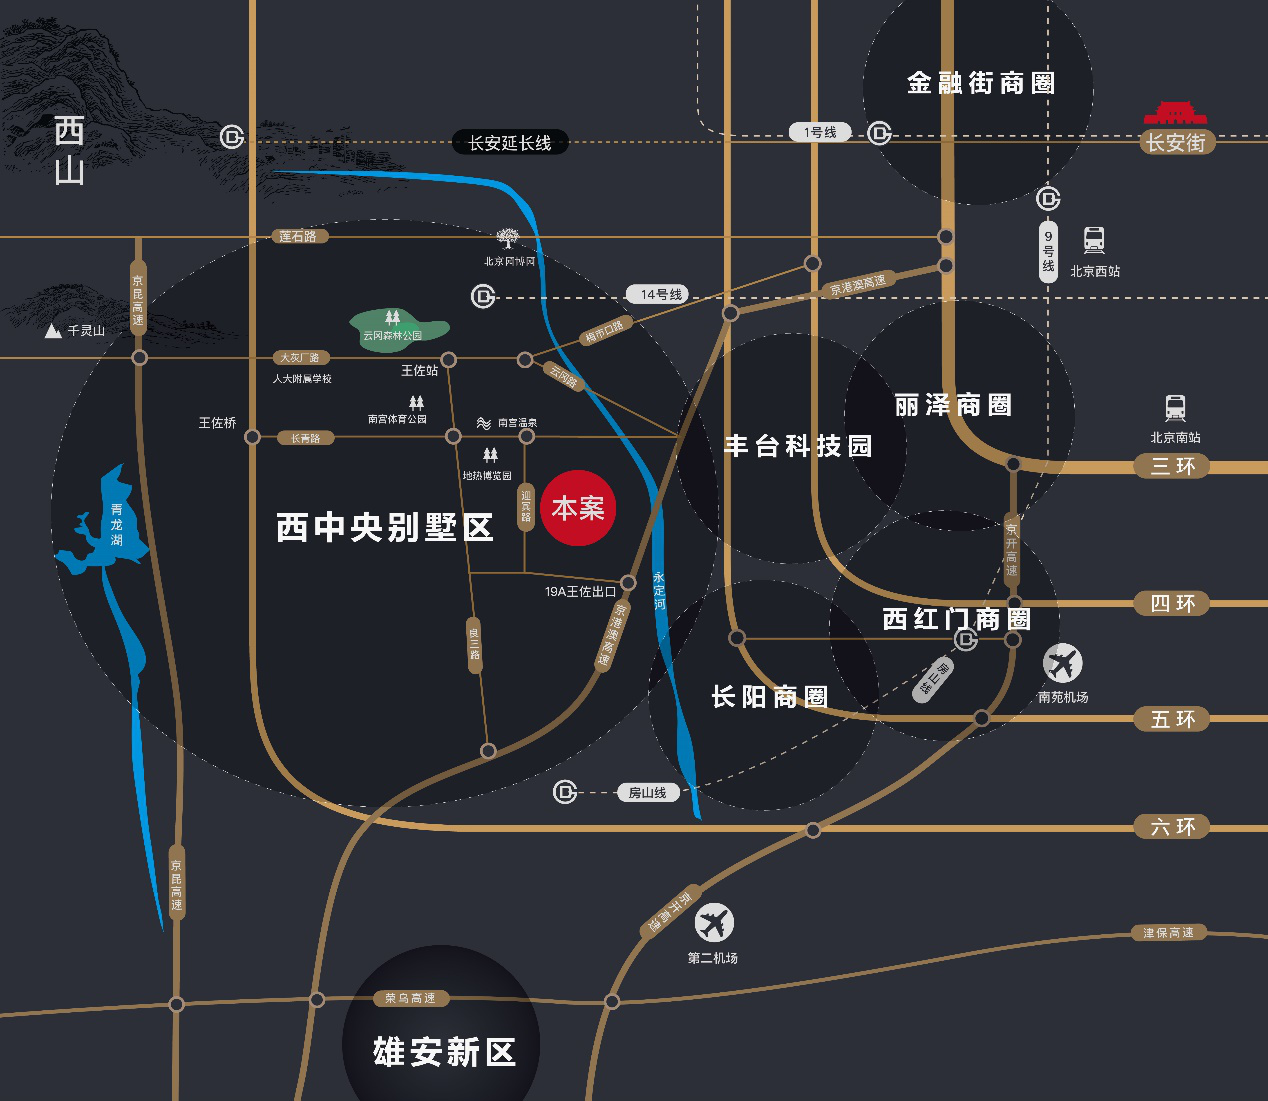 共鉴崛起之路 西中央别墅区改写北京未来-中国网地产